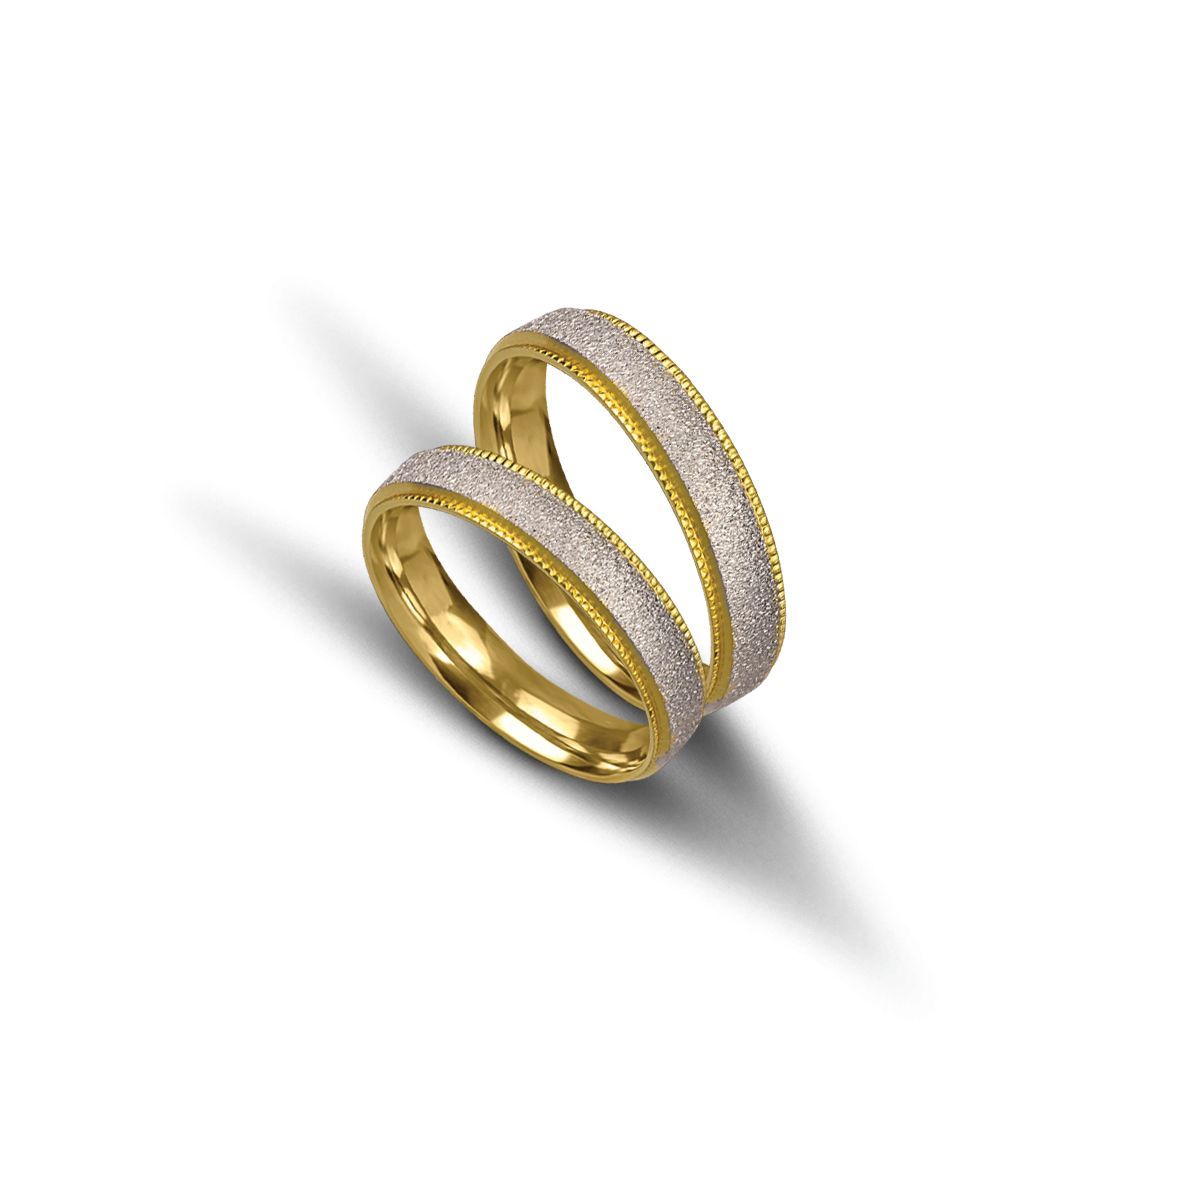 White gold & gold wedding rings 4.2mm (code VK2023/42)